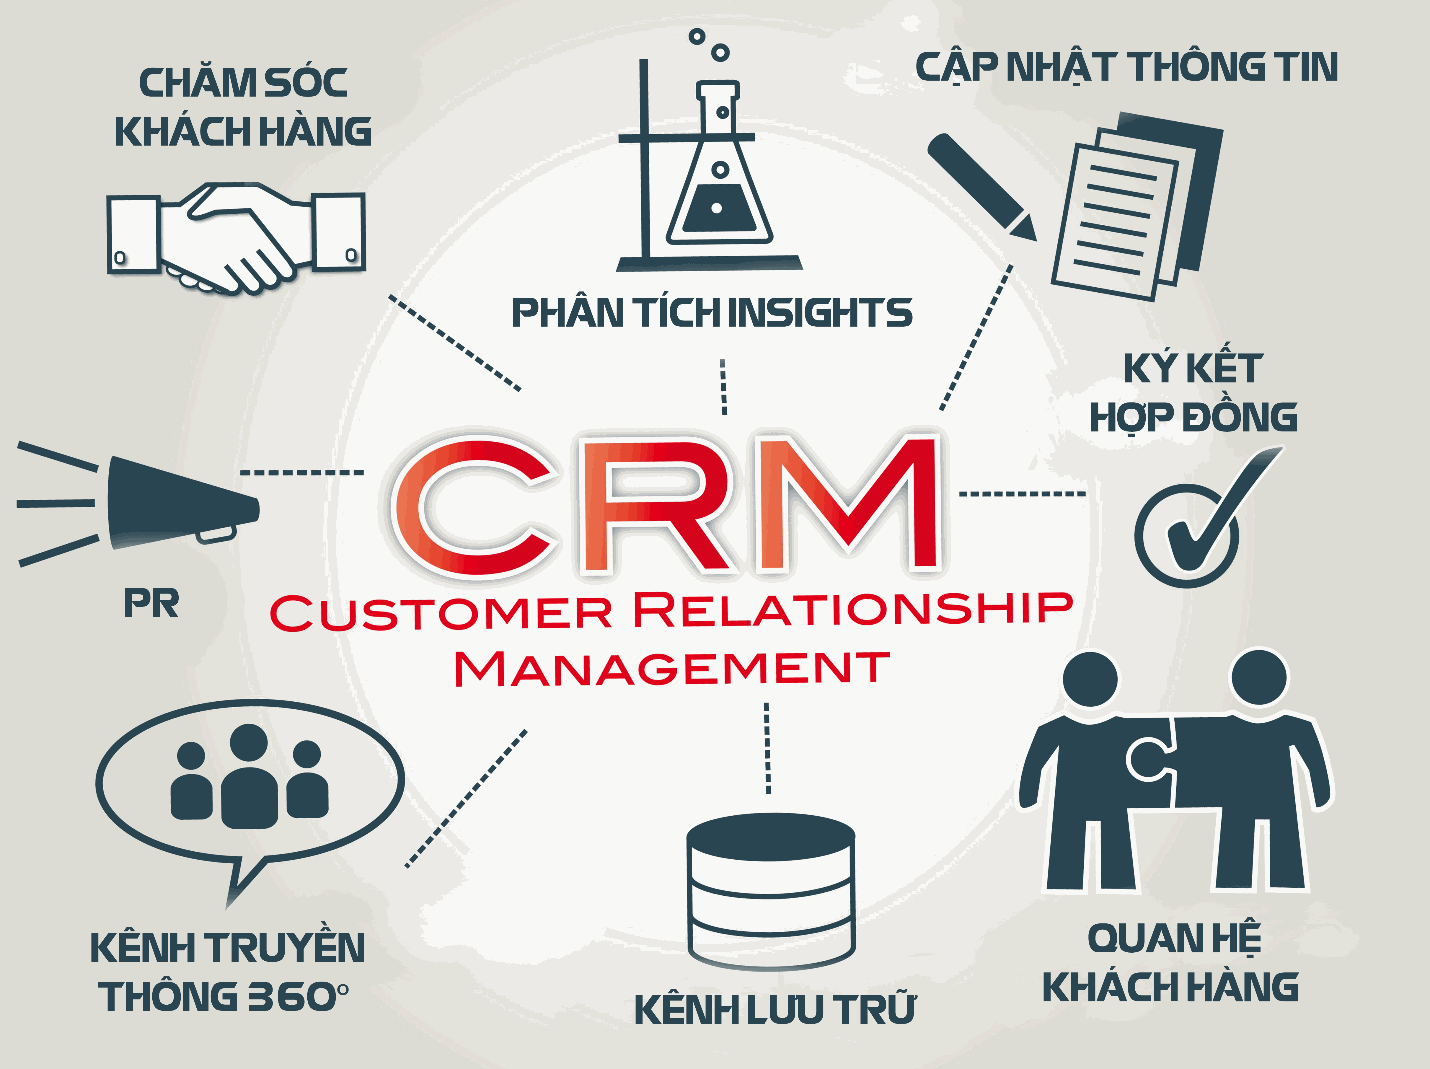 Chức năng của phần mềm CRM